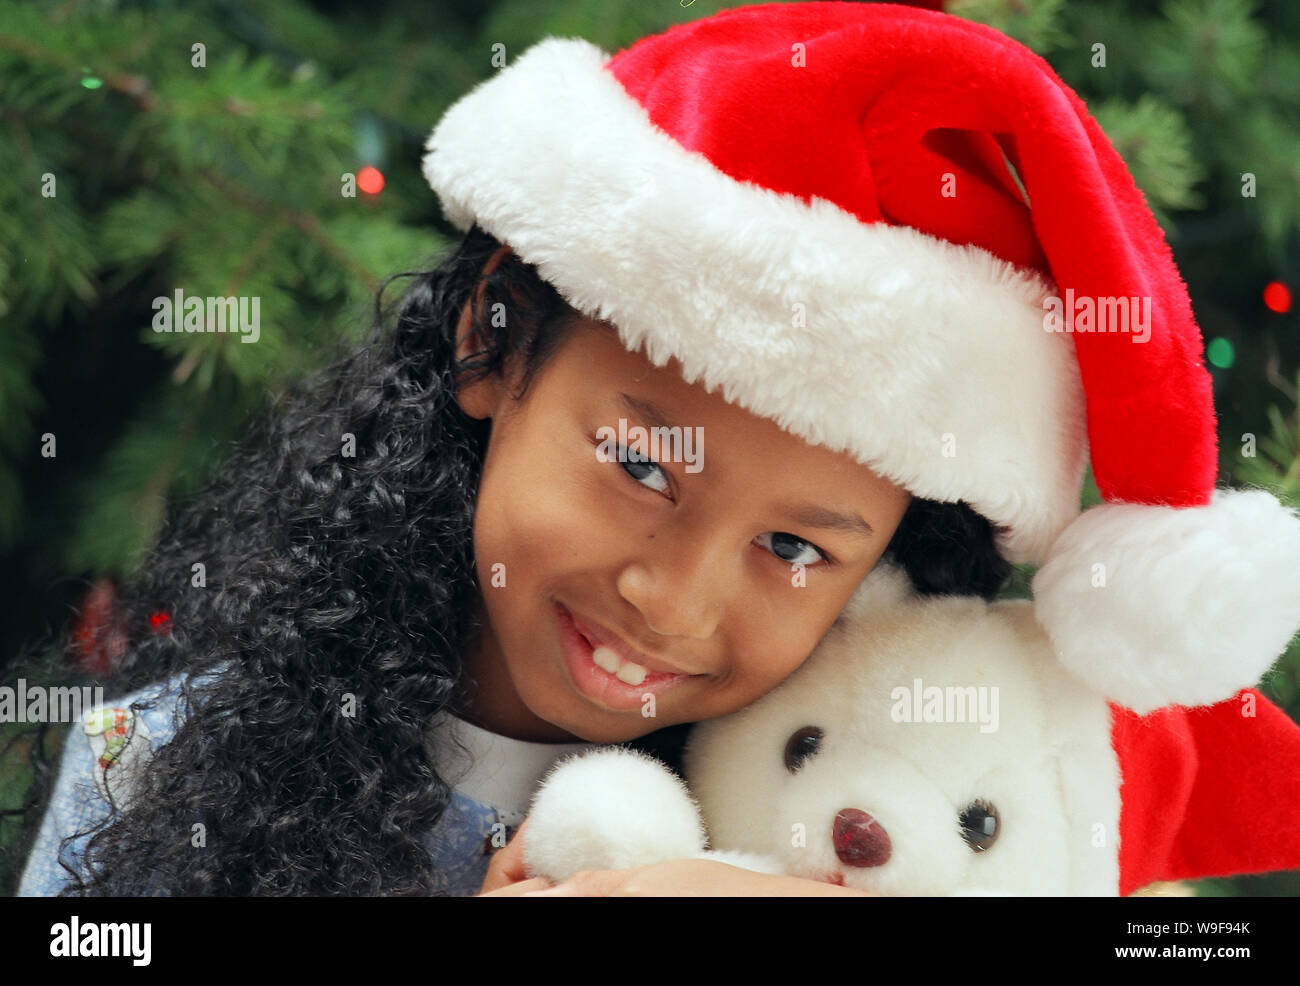 Girl holding a Christmas teddy bear Stock Photo